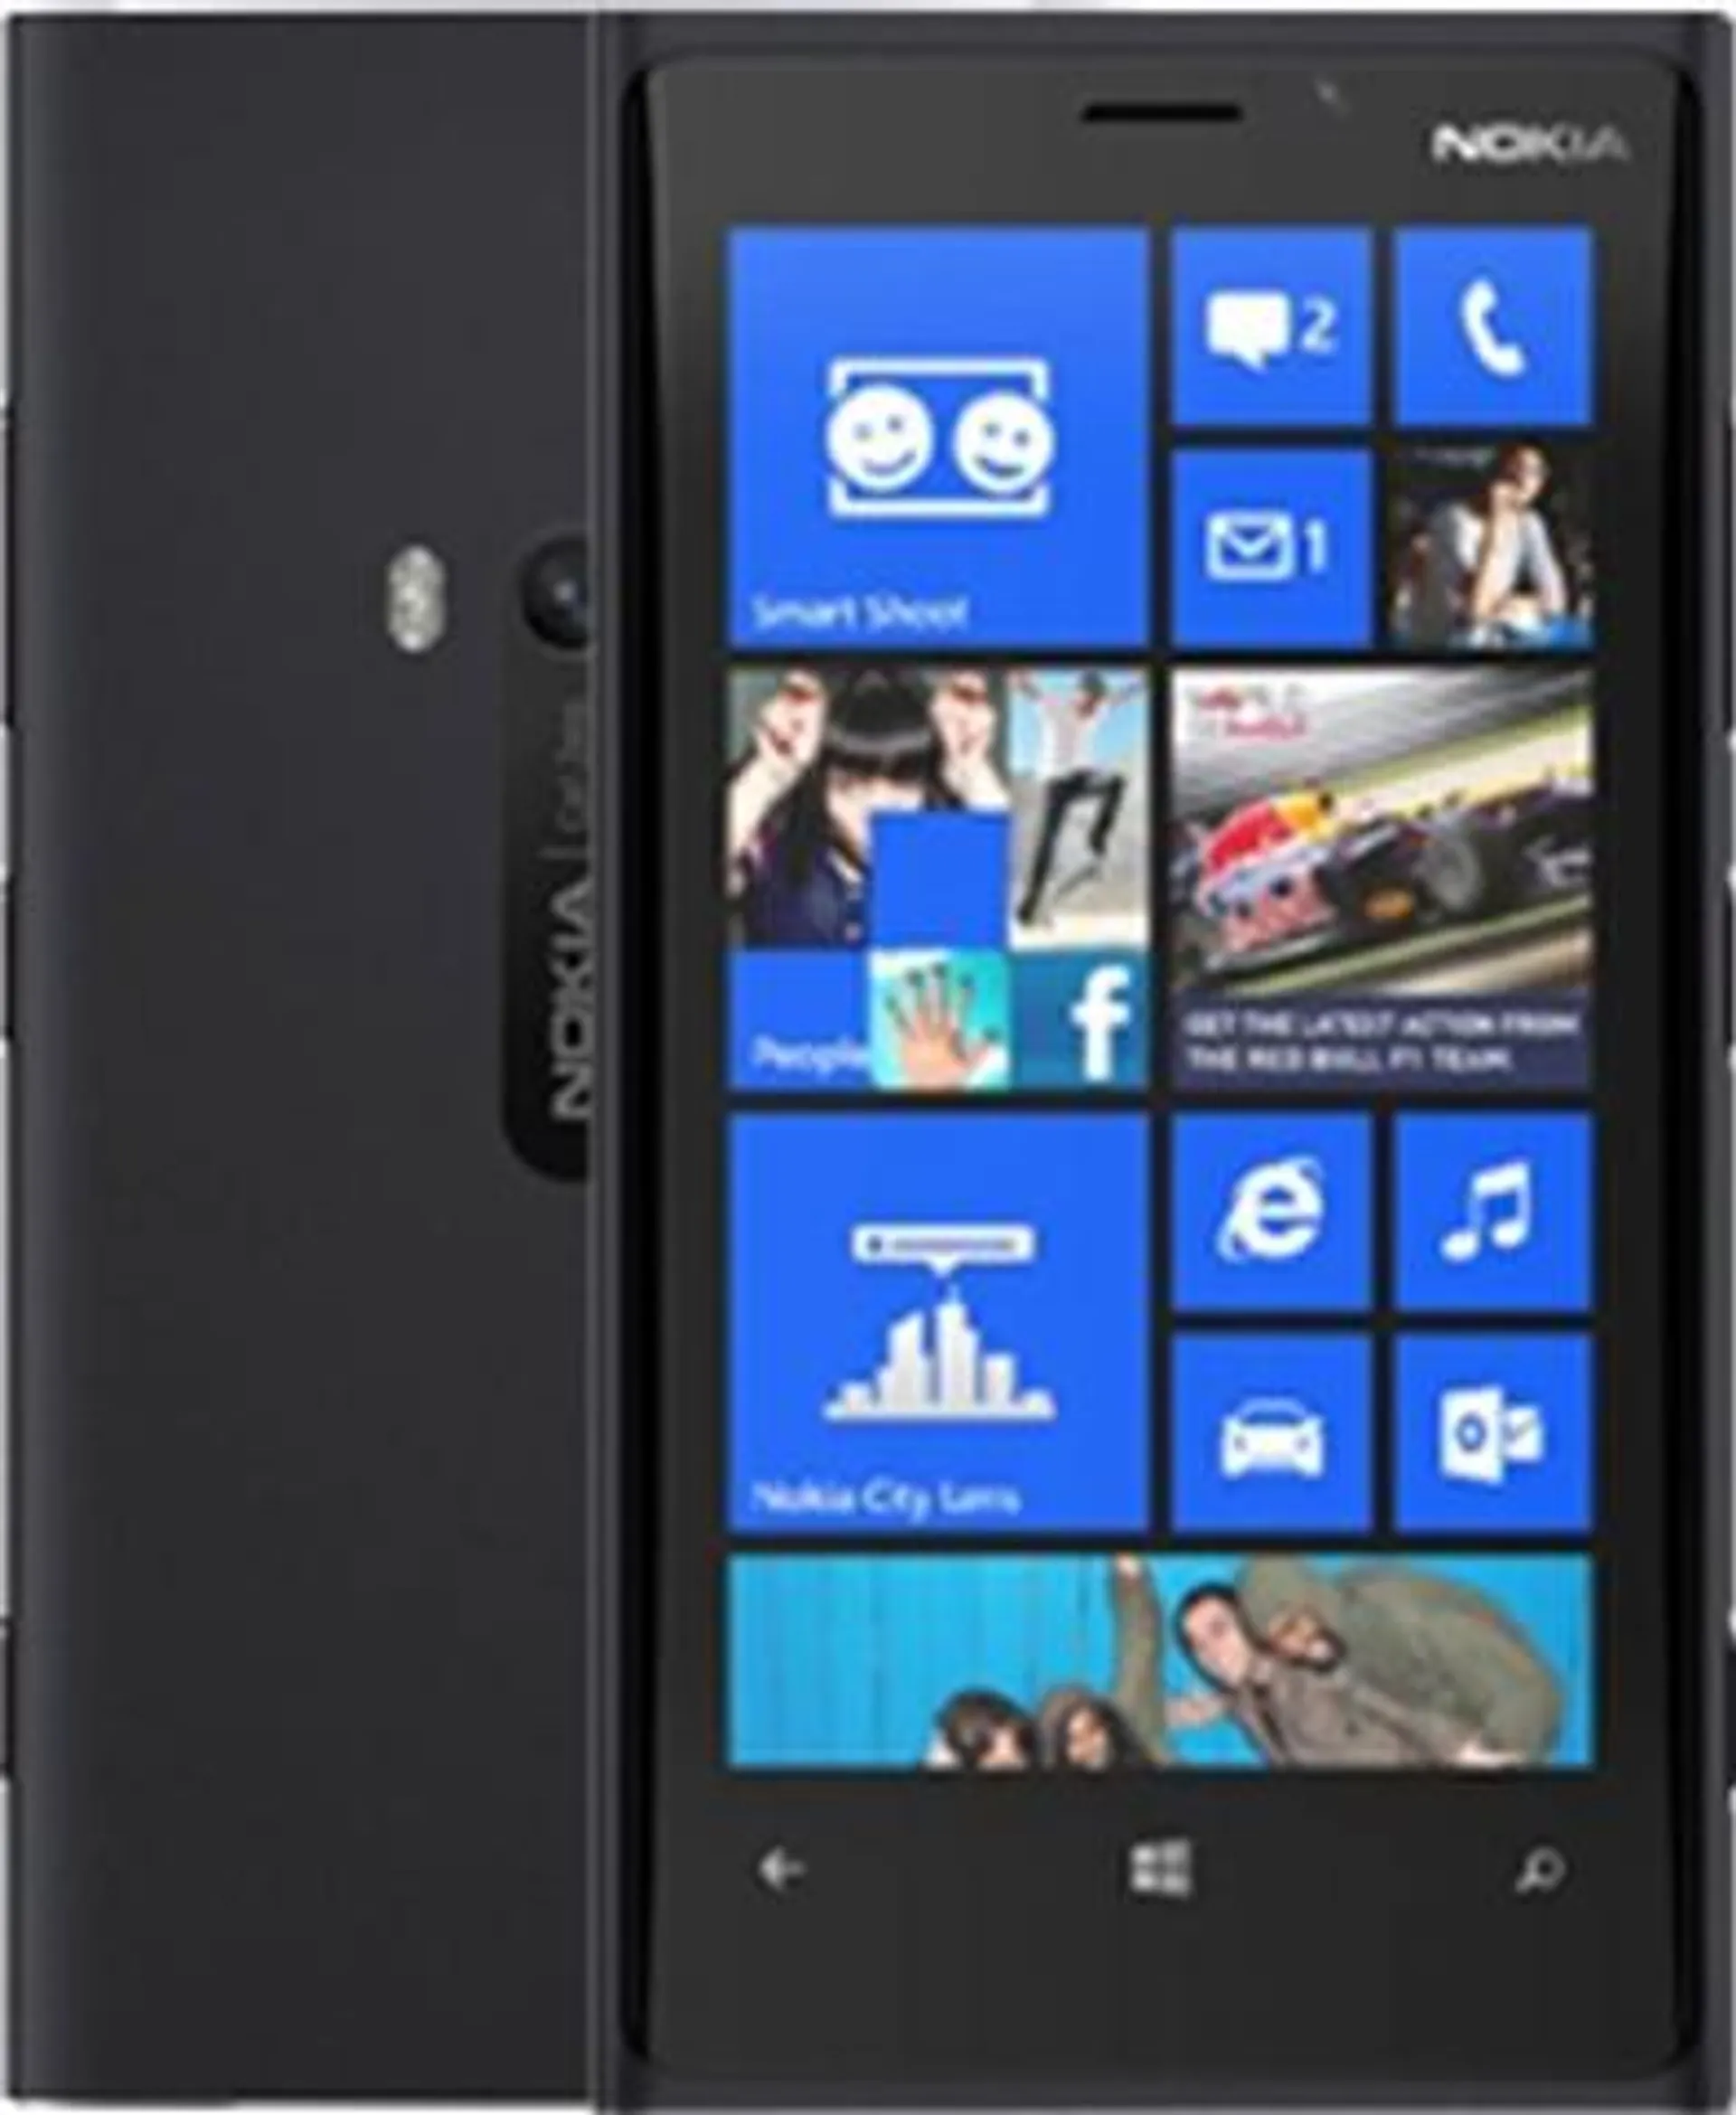 Nokia Lumia 920 32GB Black, O2 A